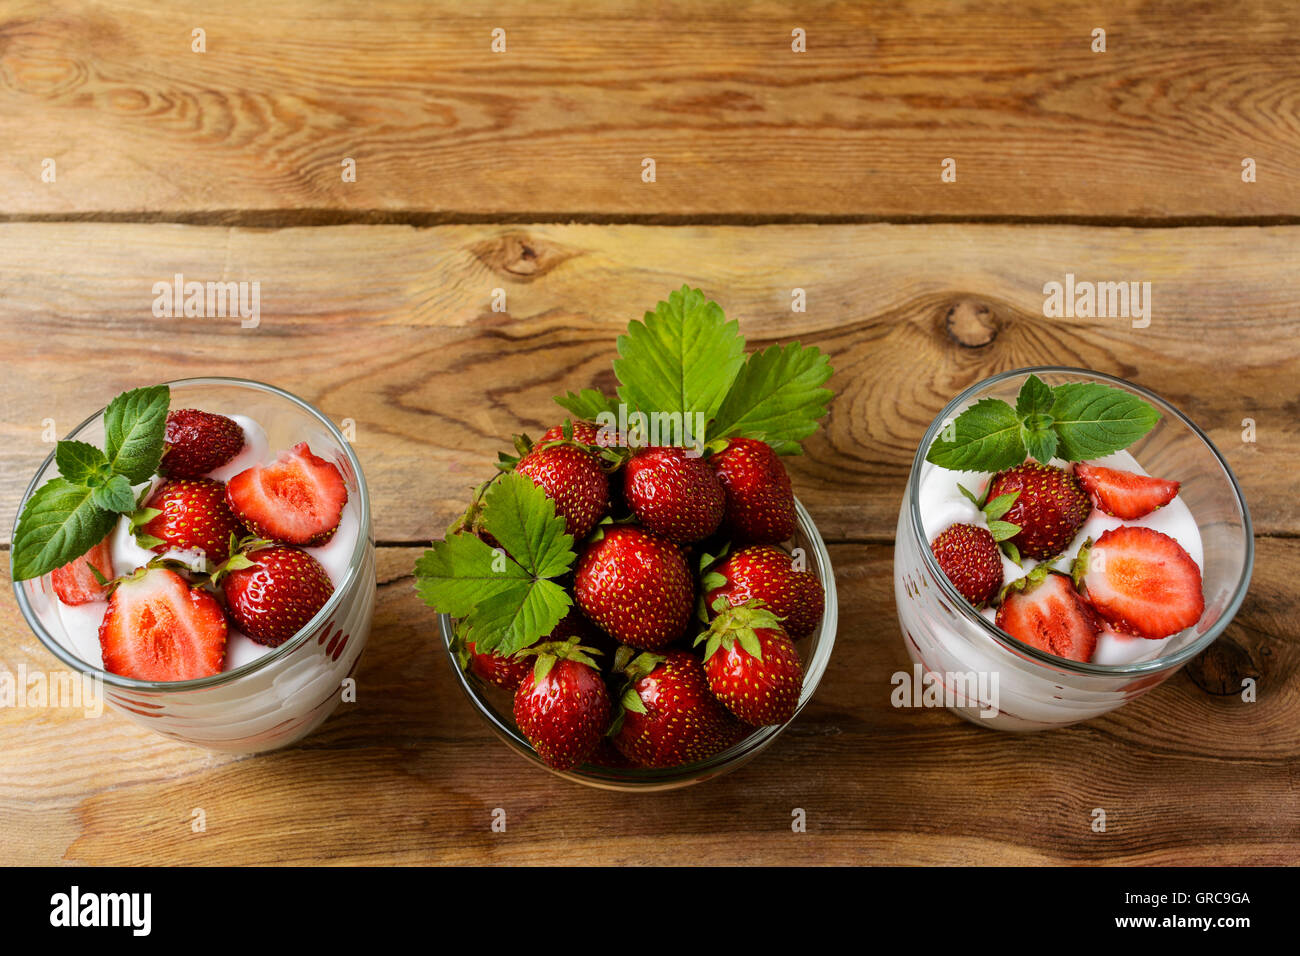 Fraises en couches pour régimes yaourts dessert sur fond de bois. Dessert d'été avec des fraises mûres. Banque D'Images